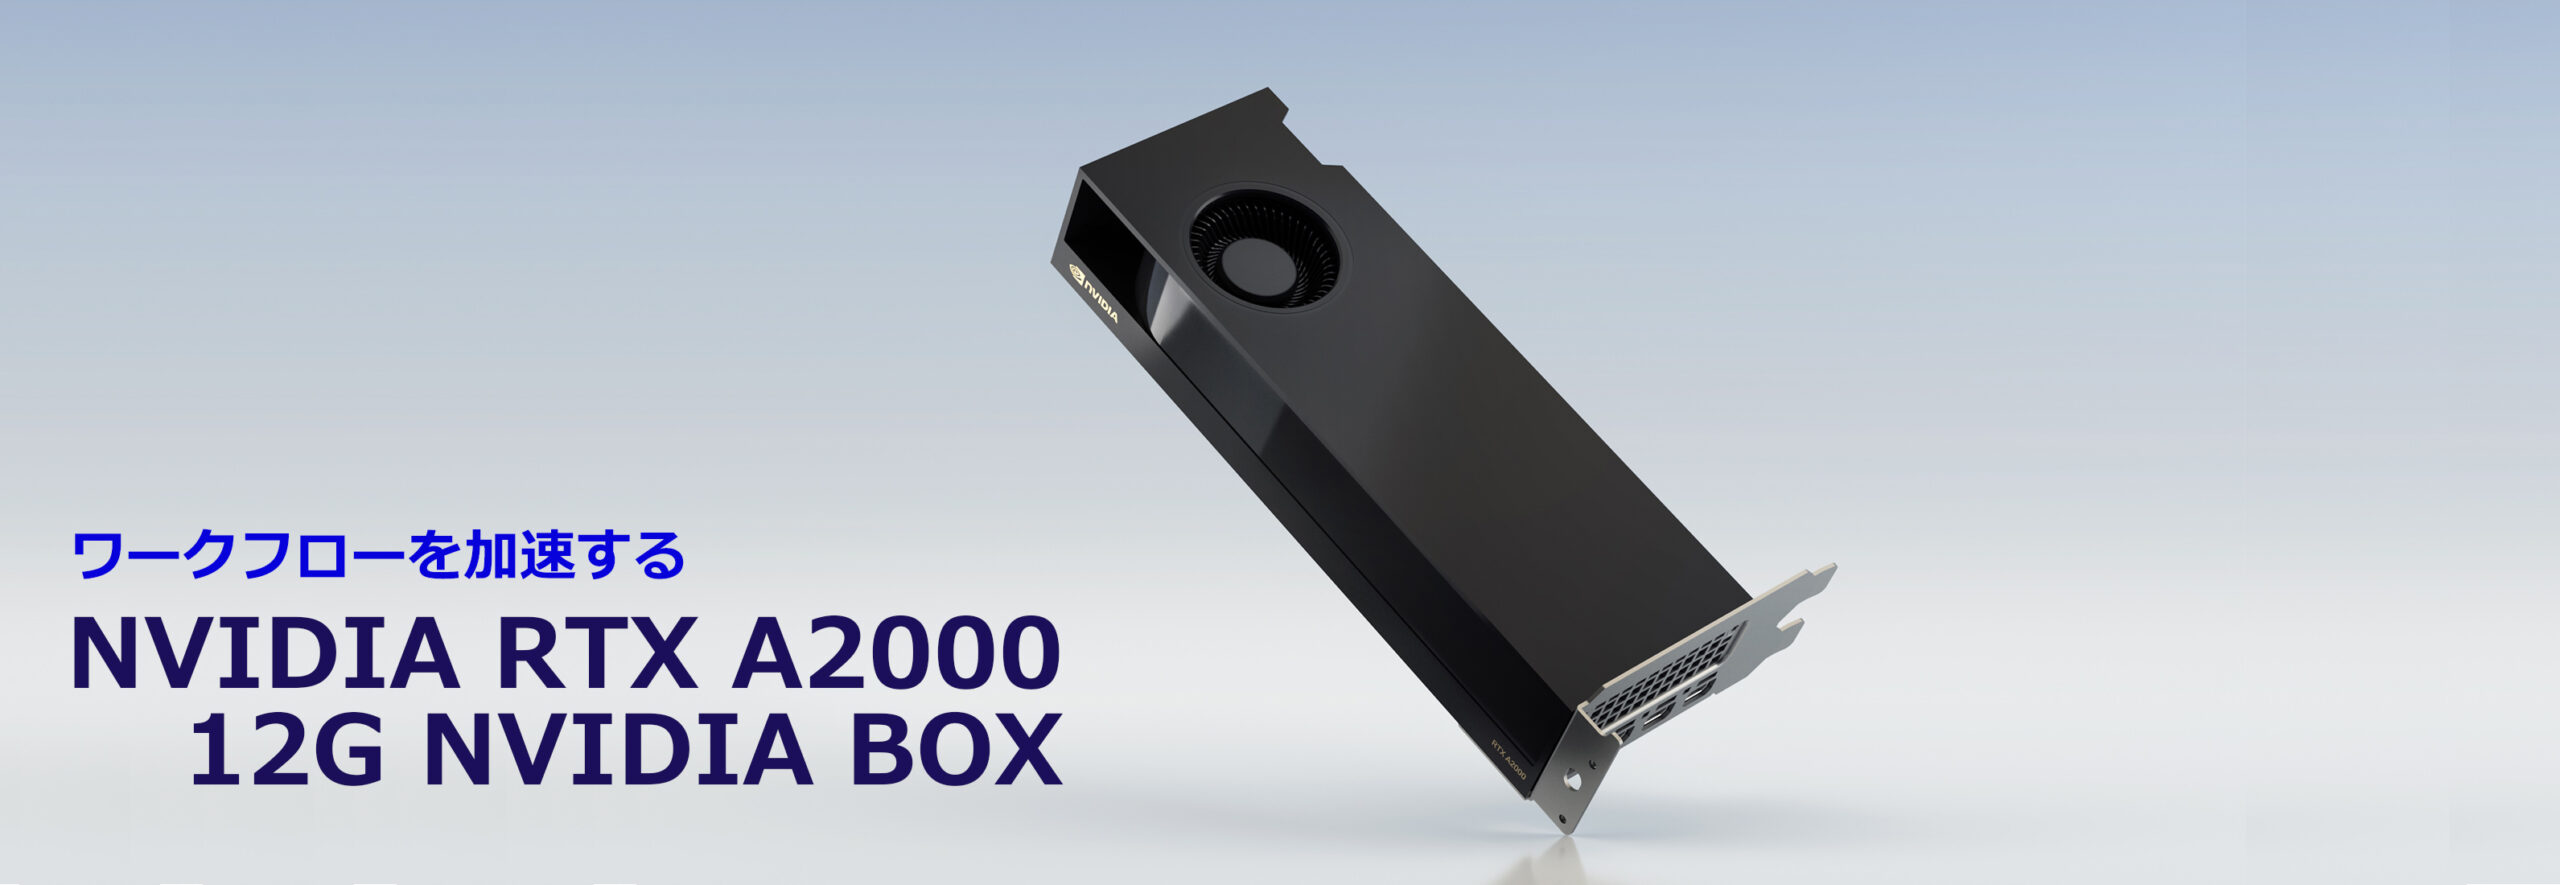 NVIDIA RTX A2000 NVIDIA BOX 1点